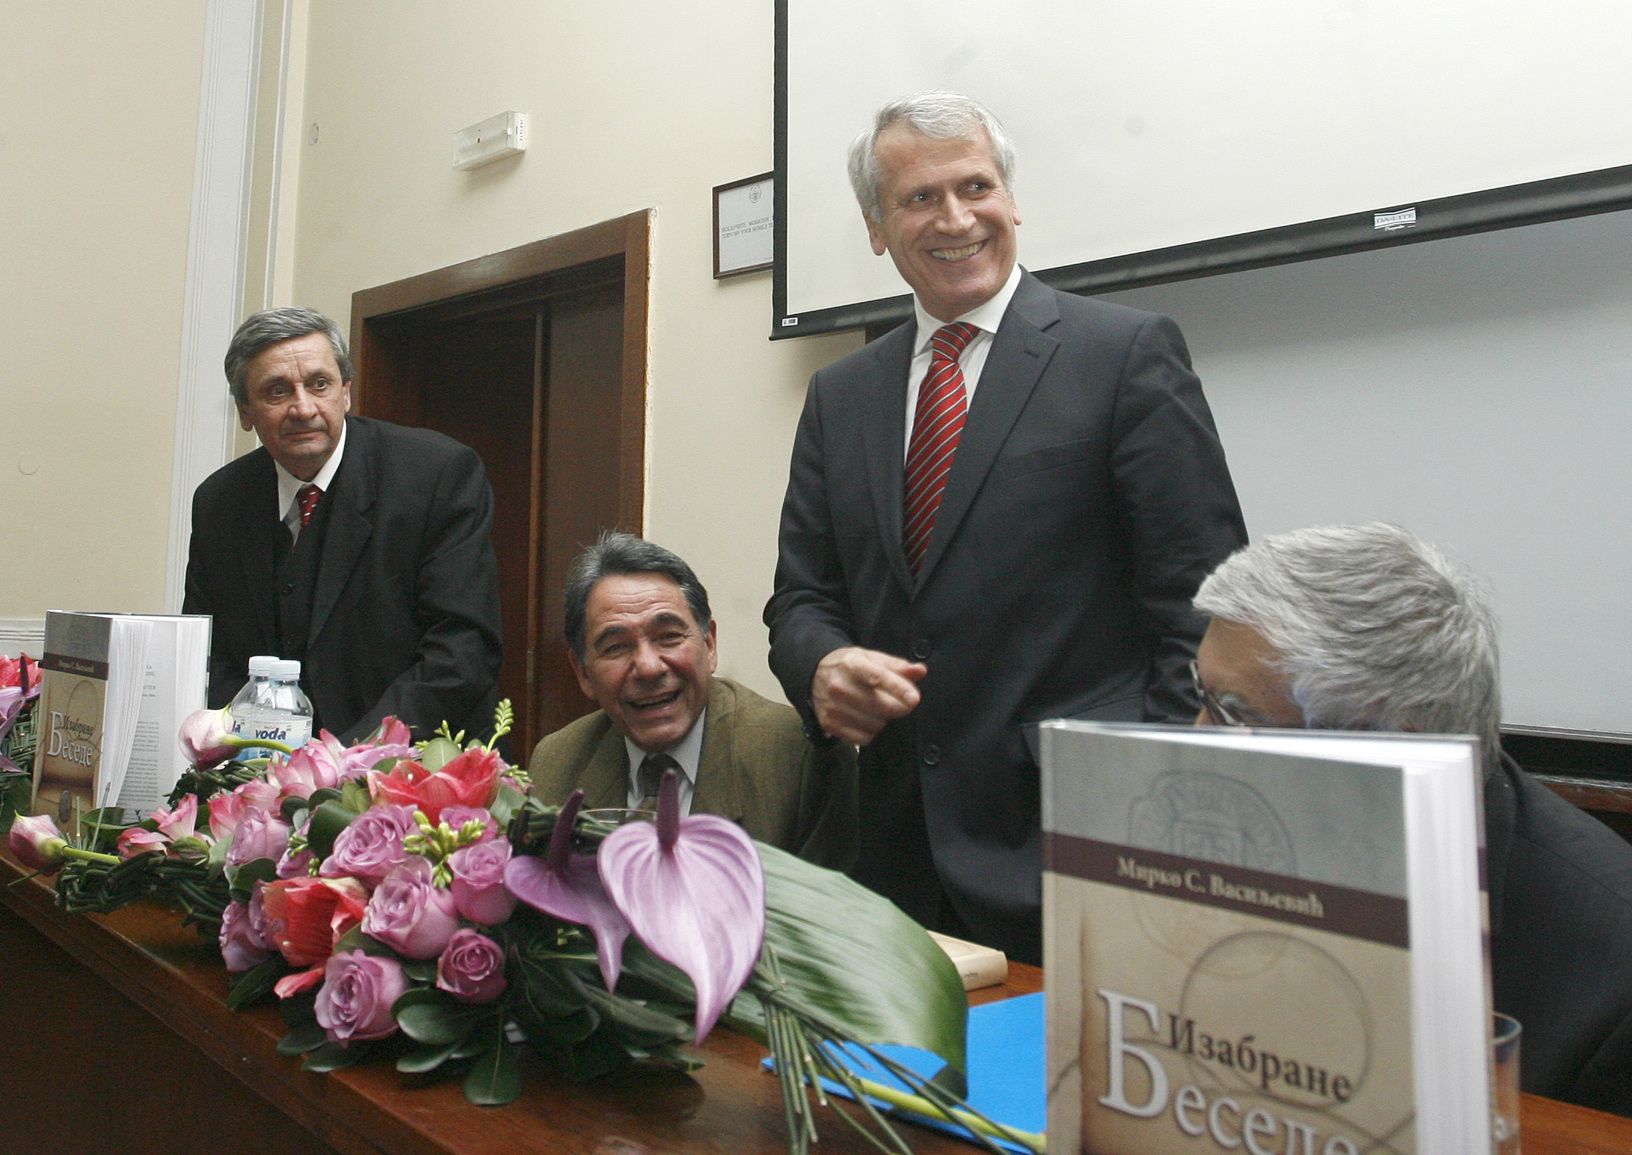 Са промоције књиге "Изабране беседе" 2010. (Фото: Д. Гагричић)